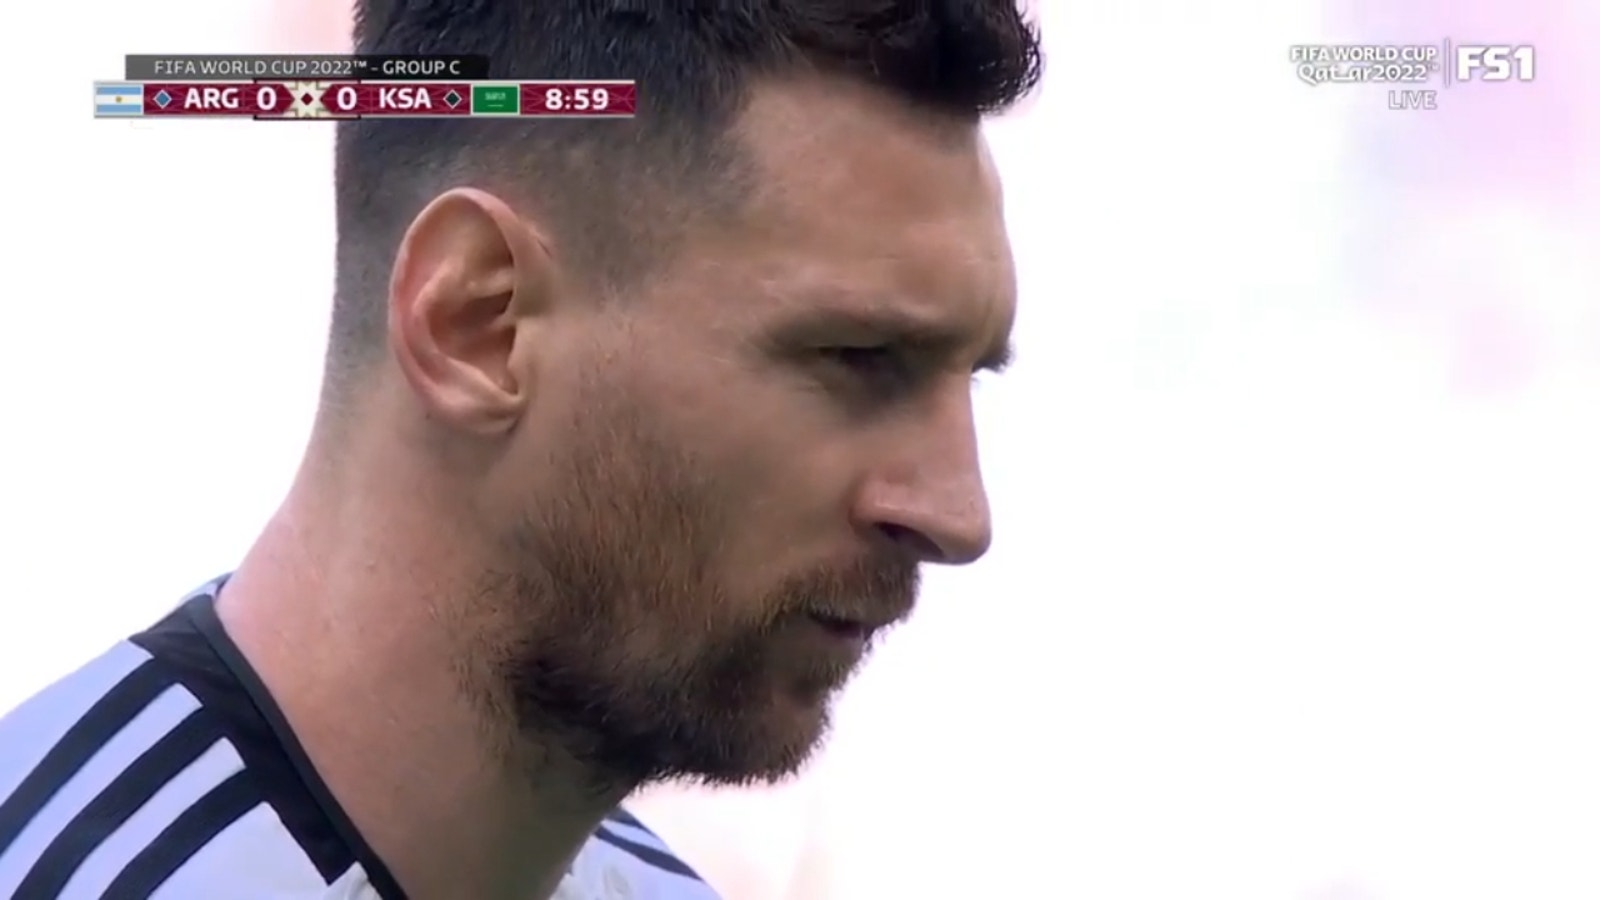 Lionel Messi marque un centre à la dixième minute pour que l'Argentine avance 1-0 contre l'Arabie saoudite